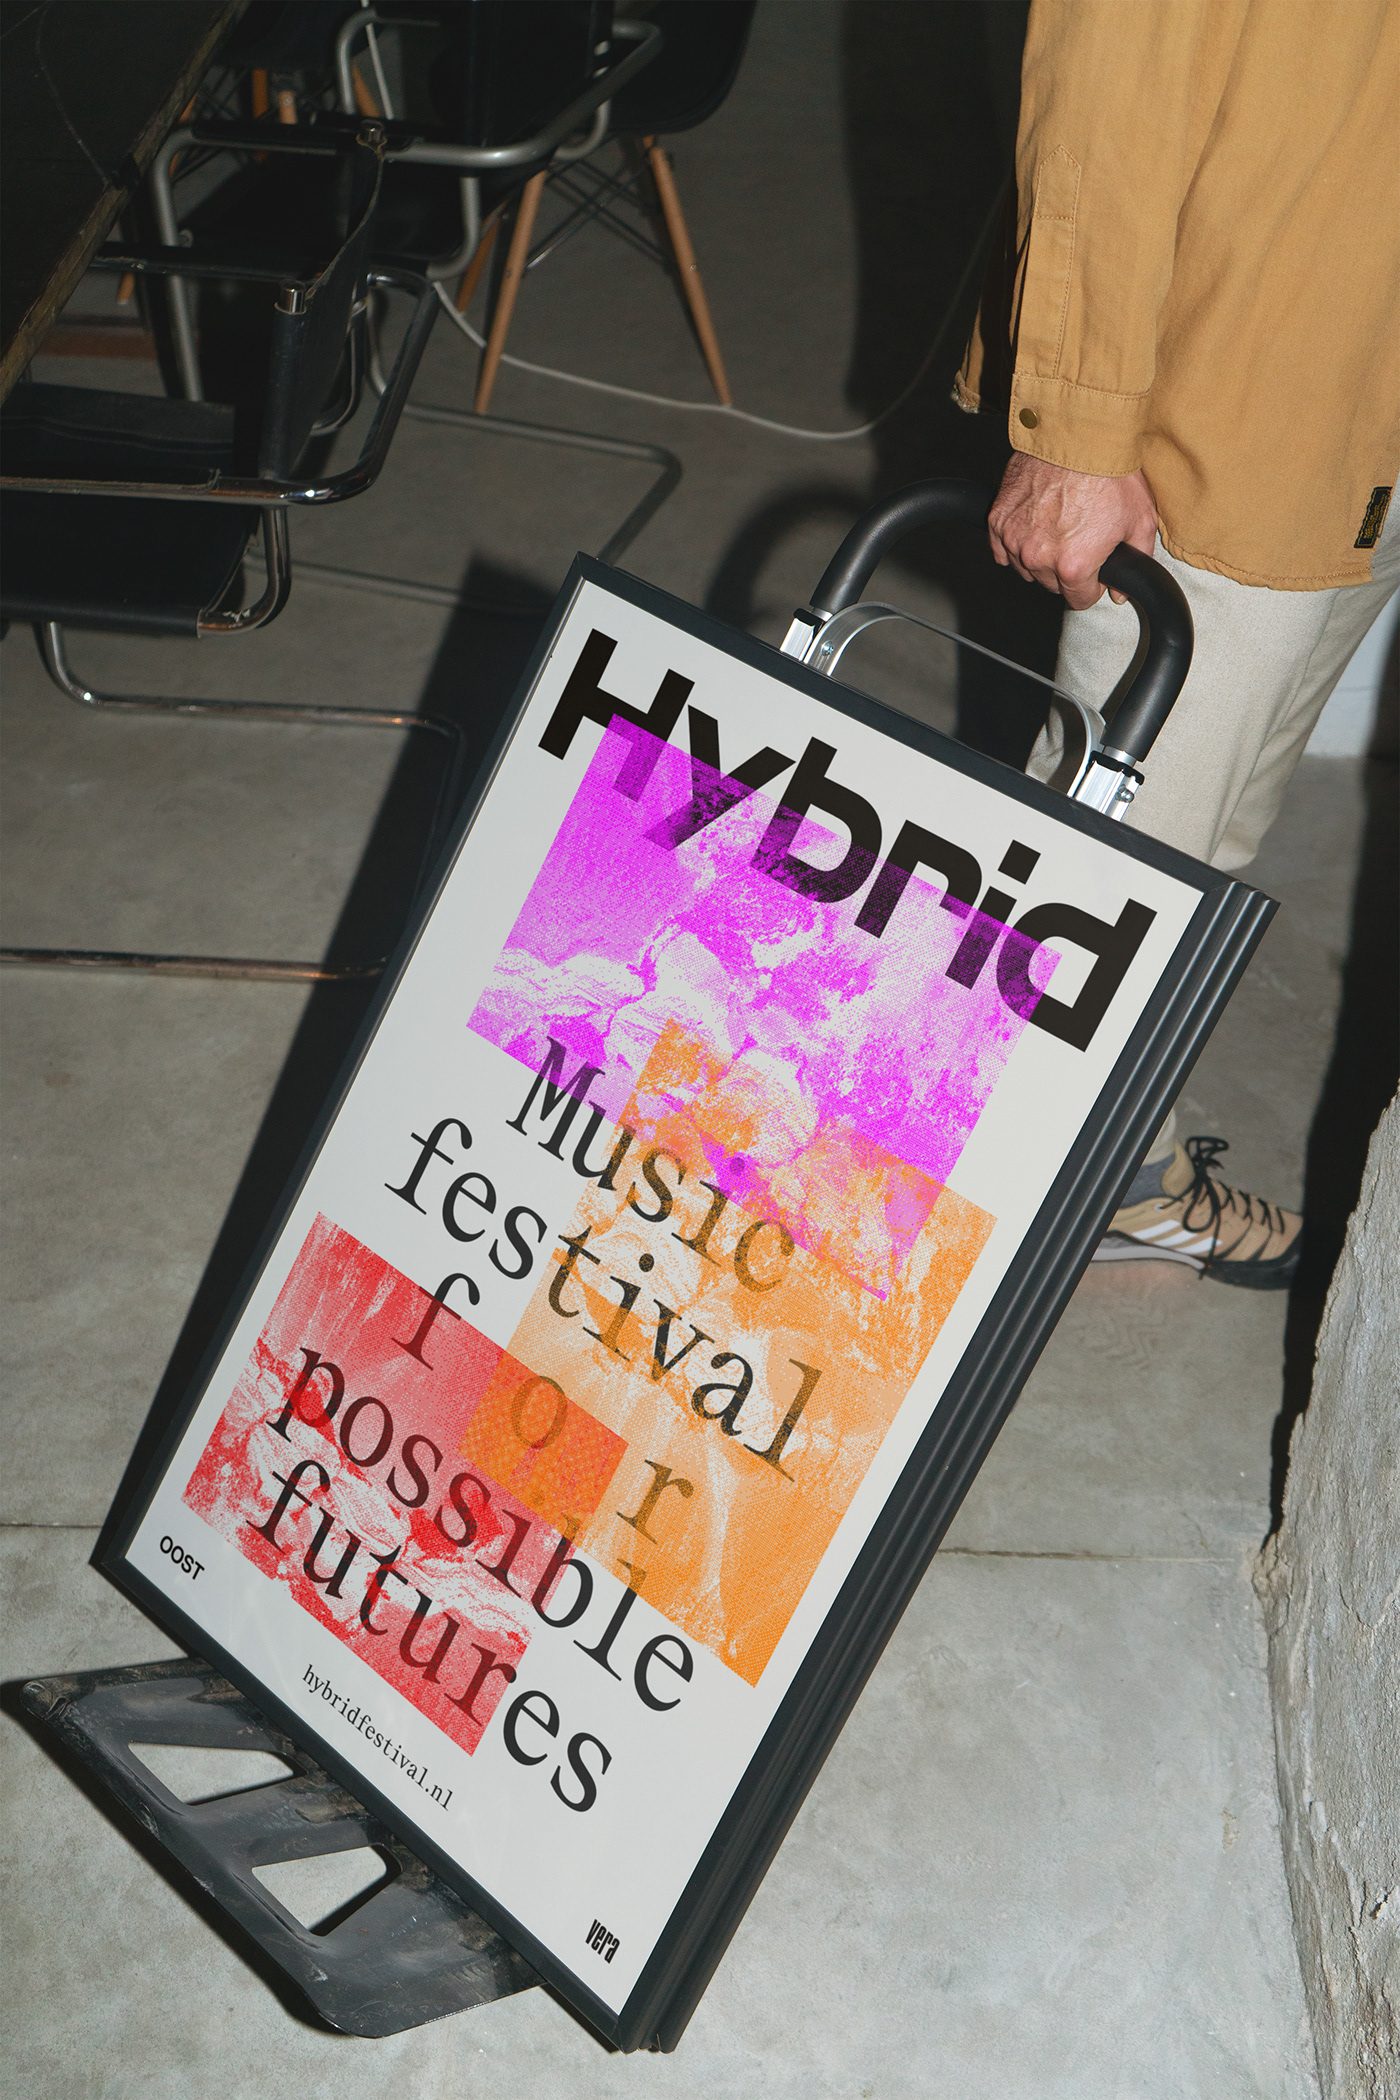 brand identity festival groningen Hybrid Festival identity Logo Design music oost vera visual identity